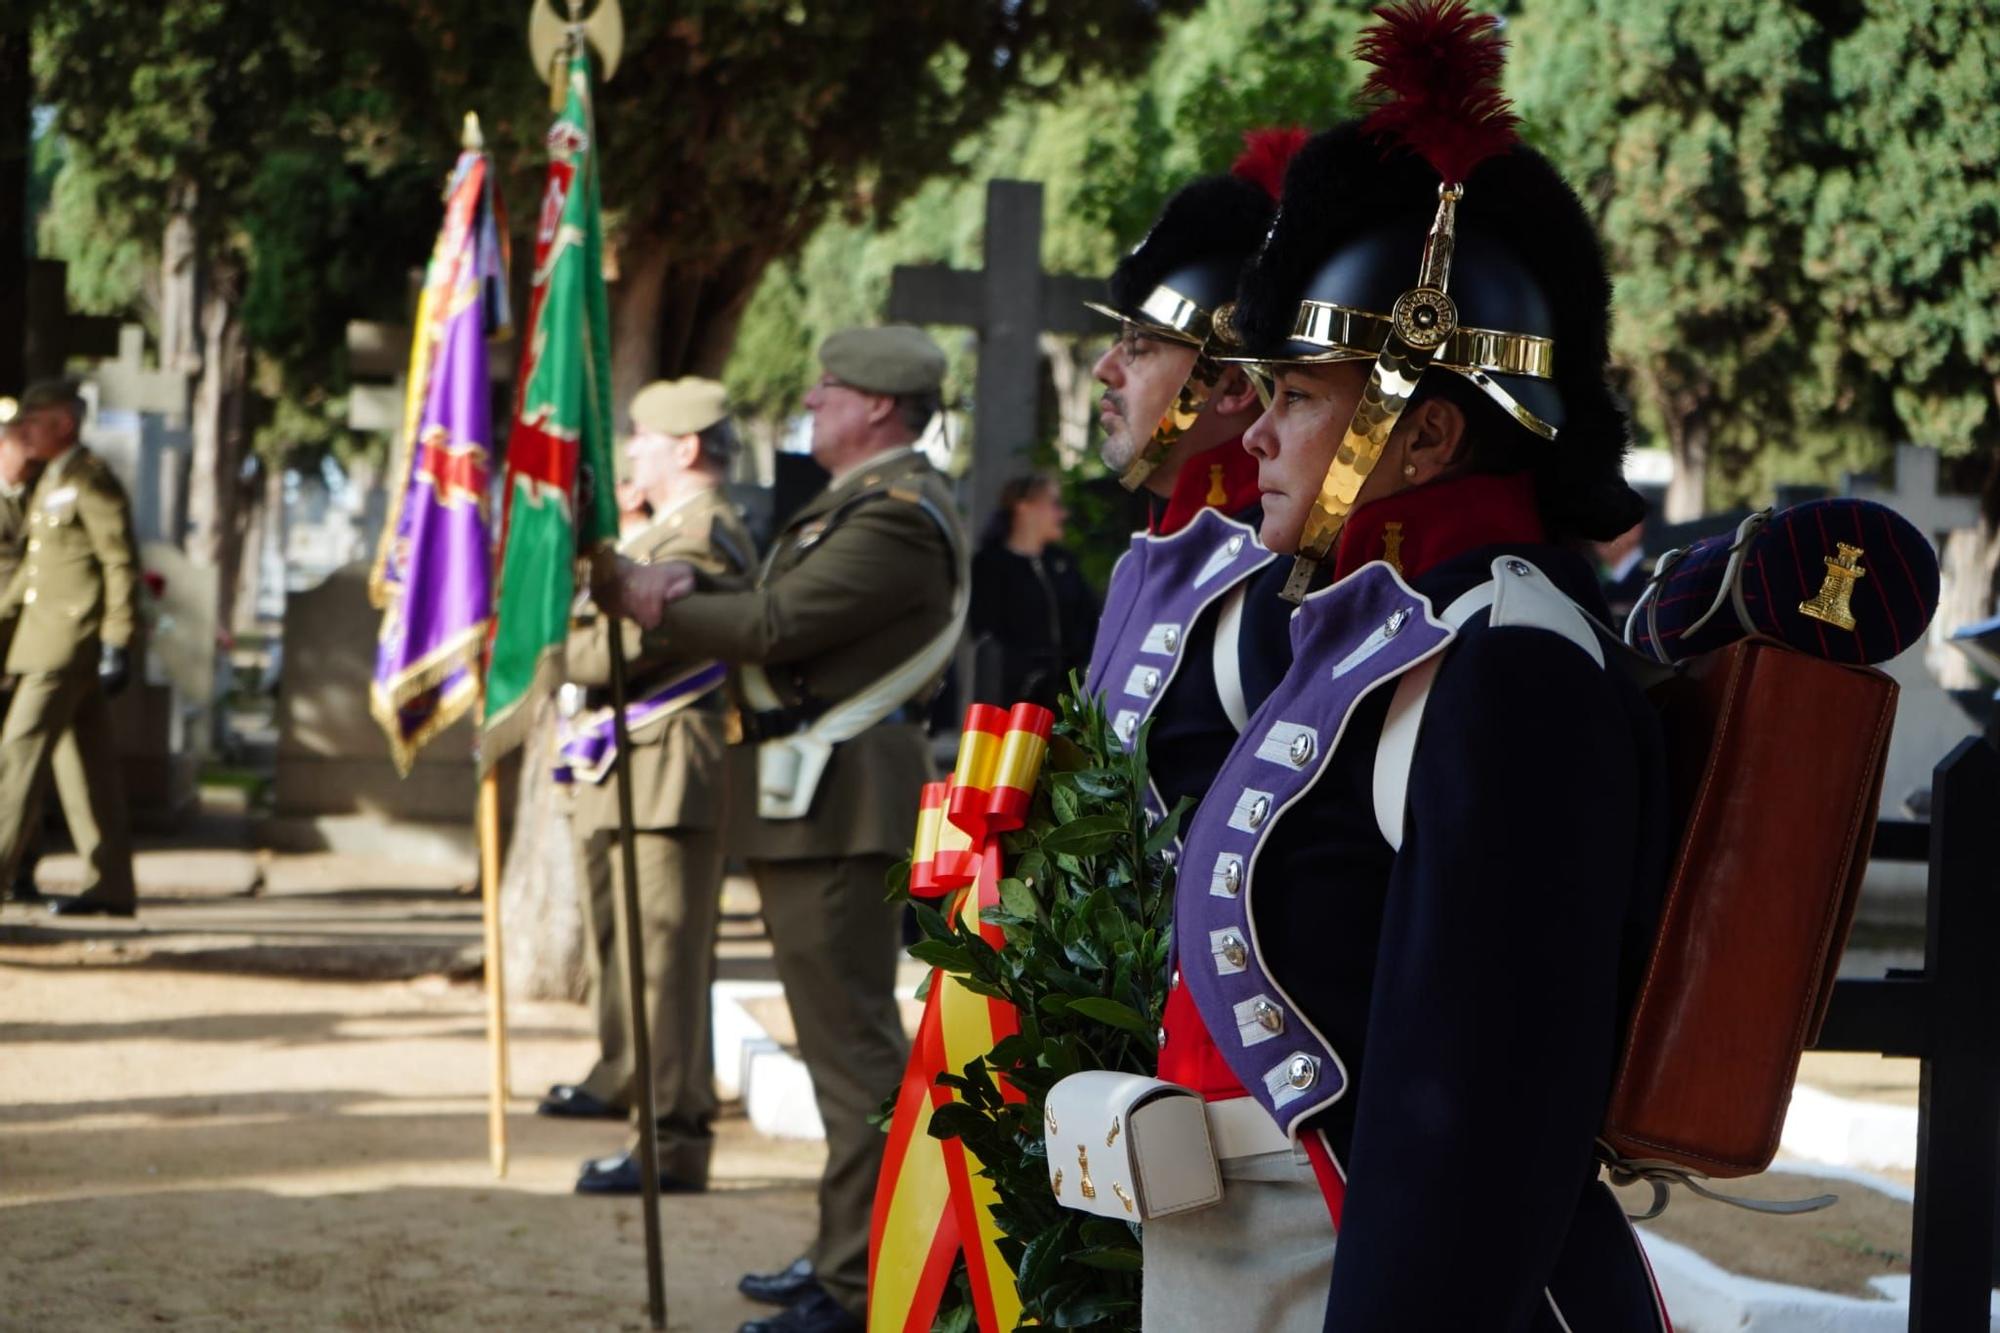 GALERÍA | El homenaje a las Fuerzas Armadas en el cementerio de Zamora, en imágenes